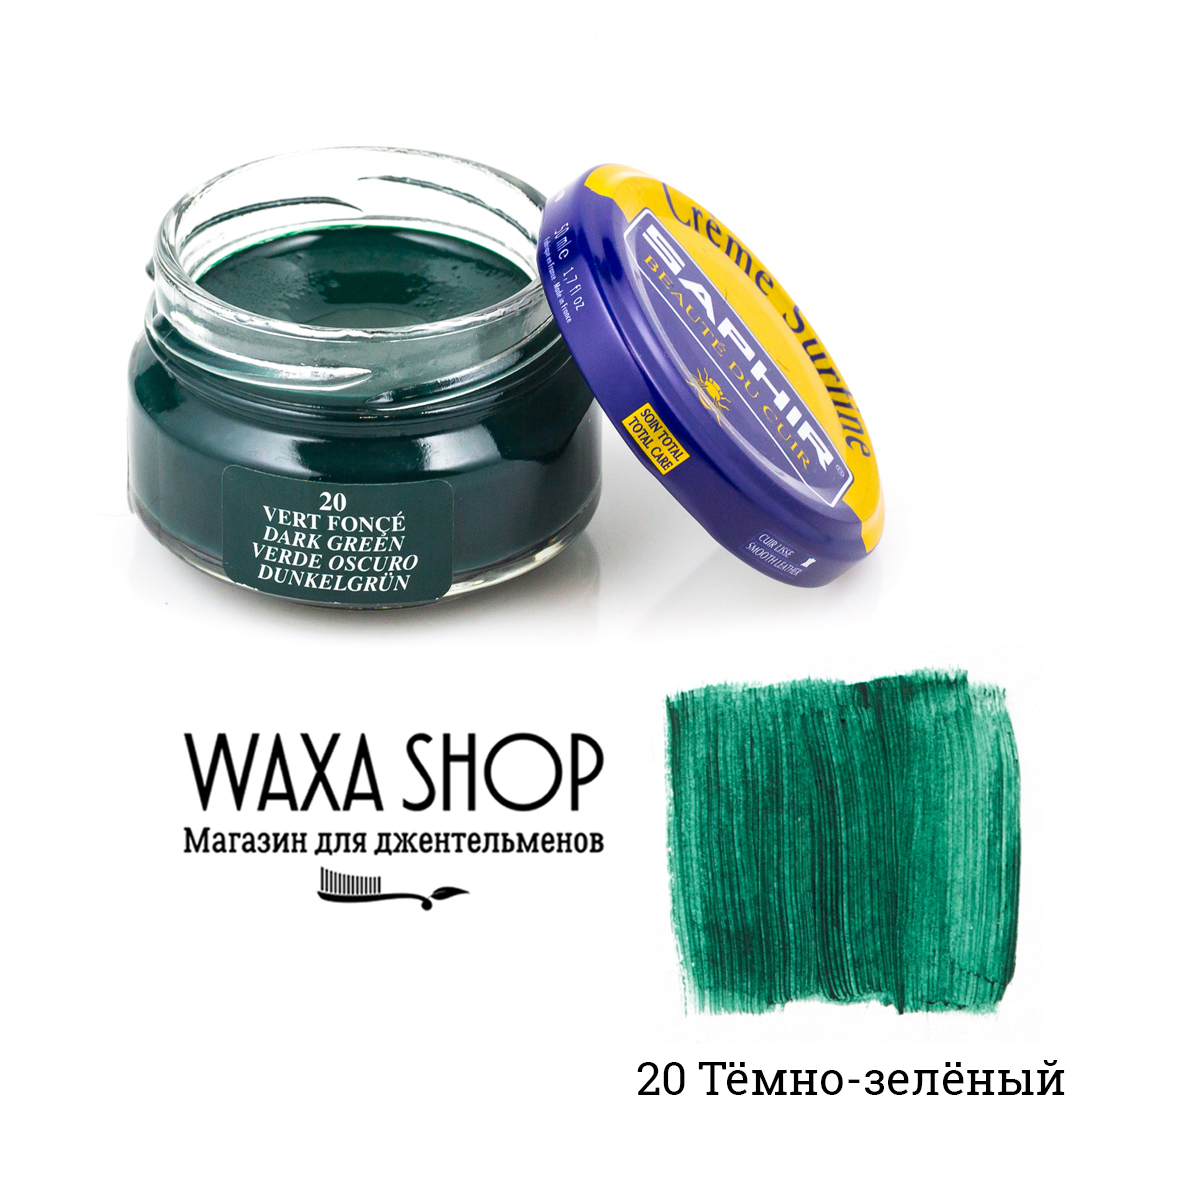 Темно-зеленый крем для обуви Saphir Сreme Surfine - купить в Москве, СПб.  Цена в интернет-магазине Waxa Shop